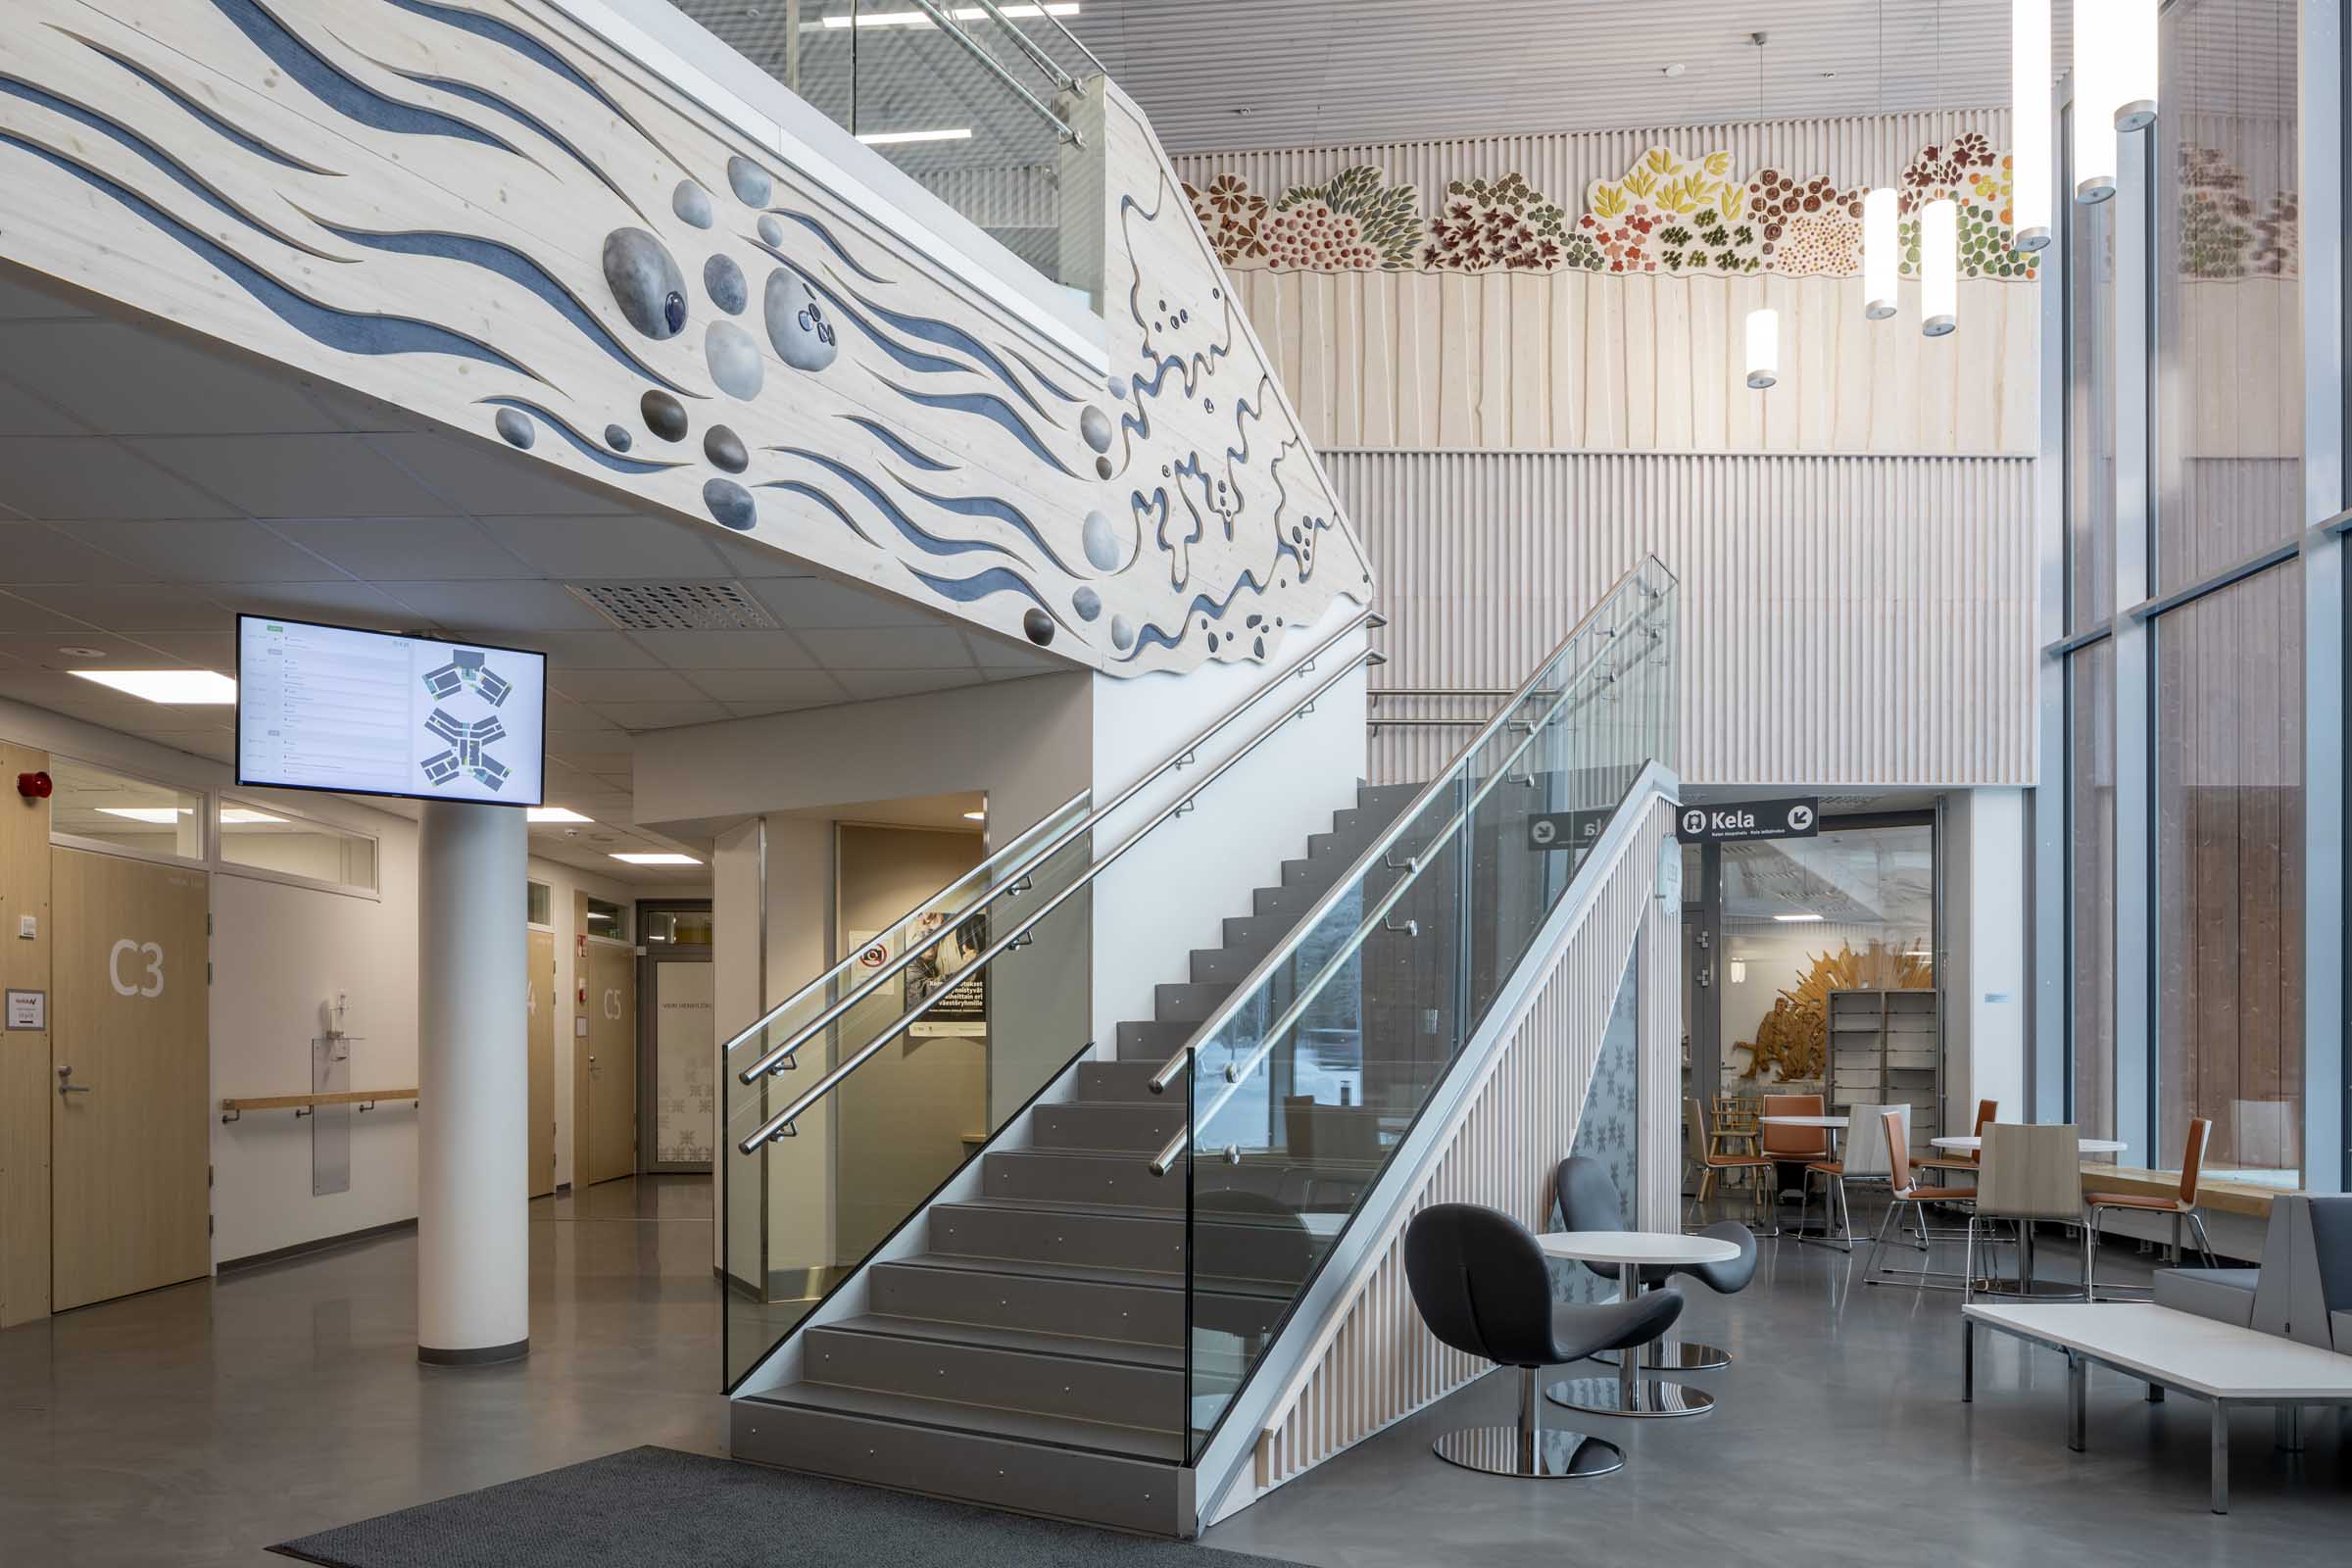 Sodankylän hyvinvointikeskus "Sopukka", portaat ja luontoaiheiset seinäreliefit aulatilassa.